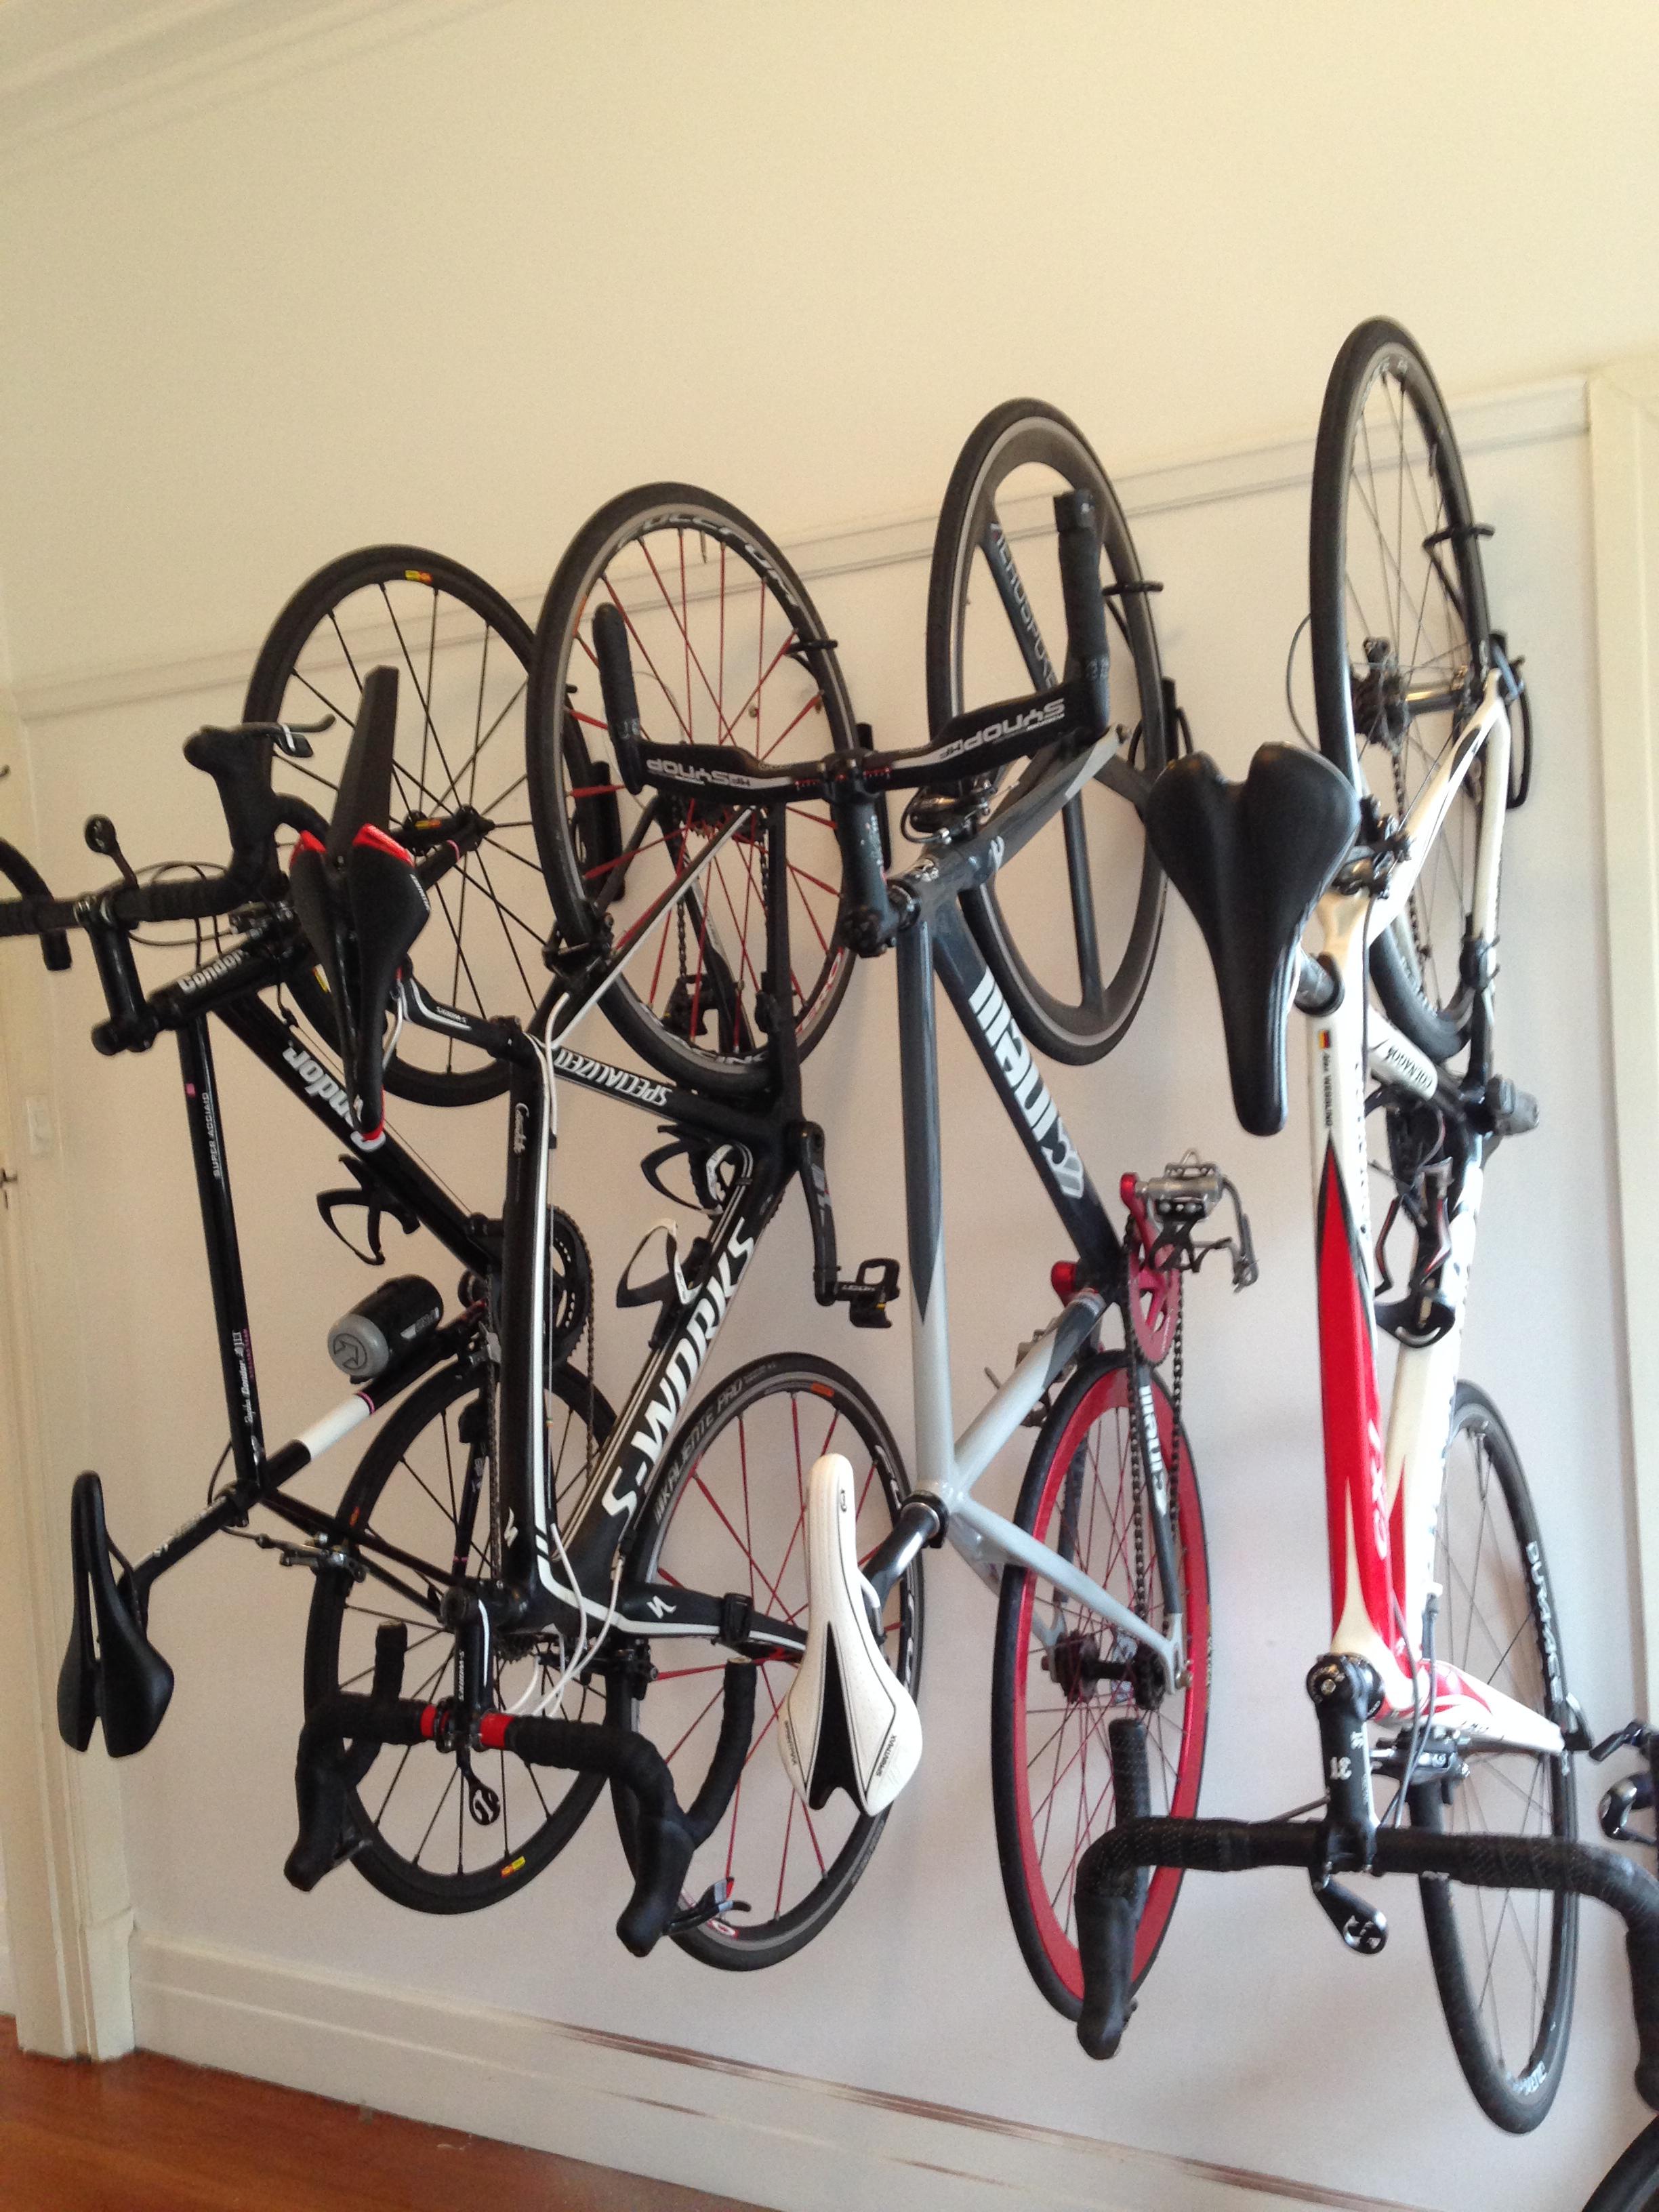 bracket to hang bike on wall